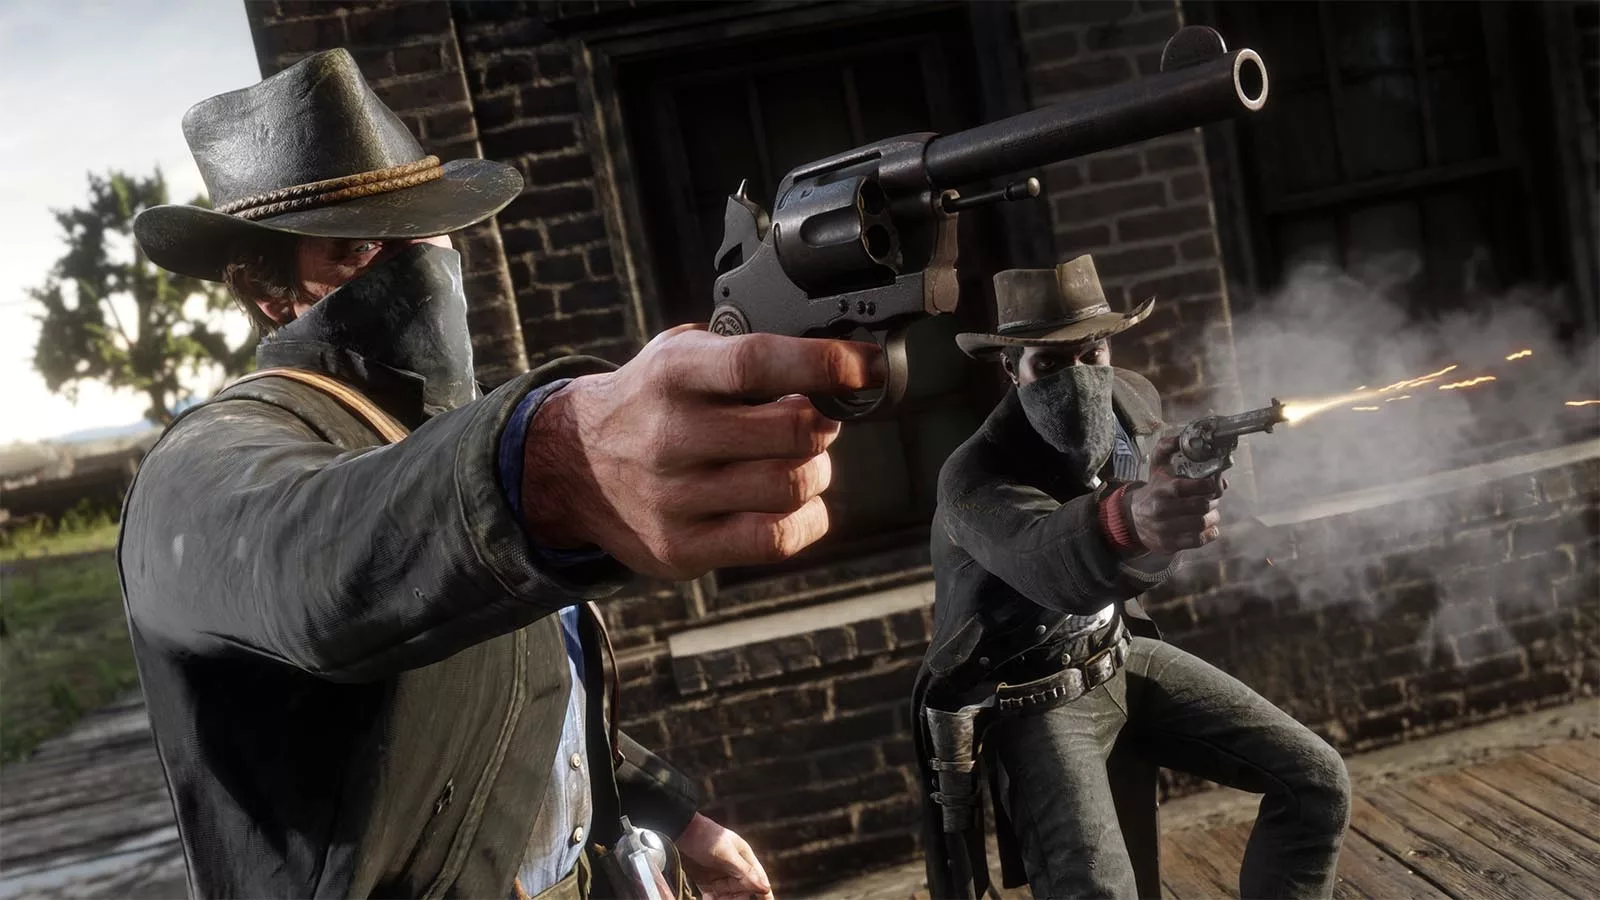 Скриншот из видеоигры, на котором двое мужчин в ковбойских шляпах и масках стреляют из пистолетов